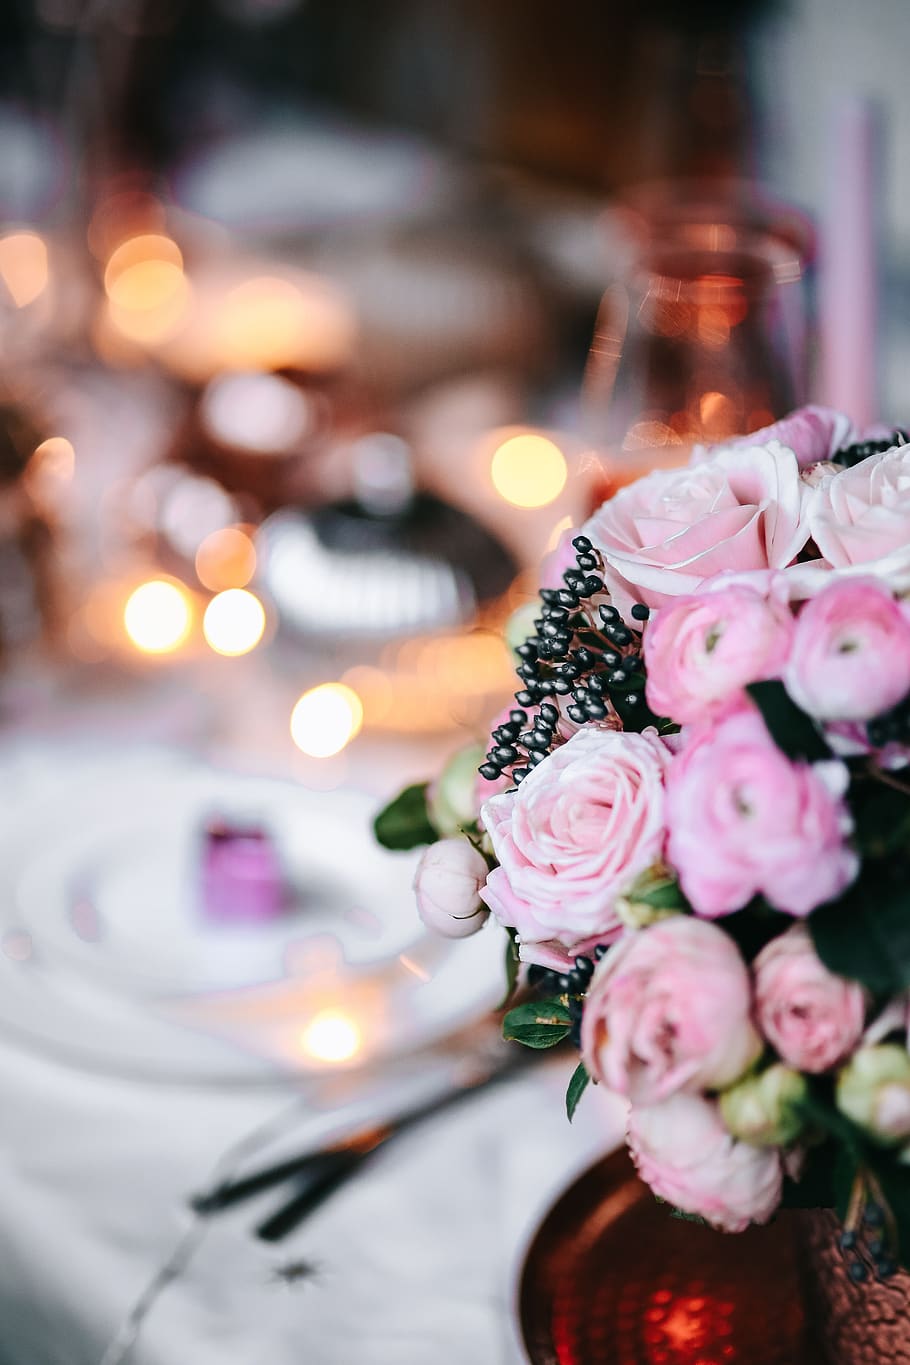 meja, dekorasi, set meja, pink, liburan, glamour, xmas, natal, bunga, tanaman berbunga